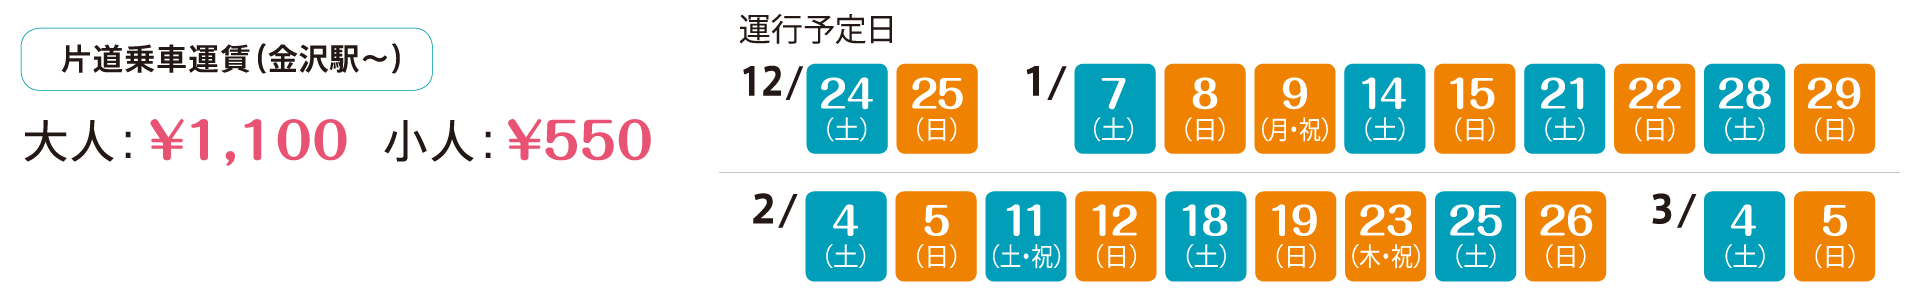 片道乗車運賃（金沢駅〜）　大人：1,100円、小人：550円　運行予定日：12月24日、25日、1月7日、8日、9日、14日、15日、21日、22日、28日、29日、2月4日、5日、11日、12日、18日、19日、23日、25日、26日、3月4日、5日